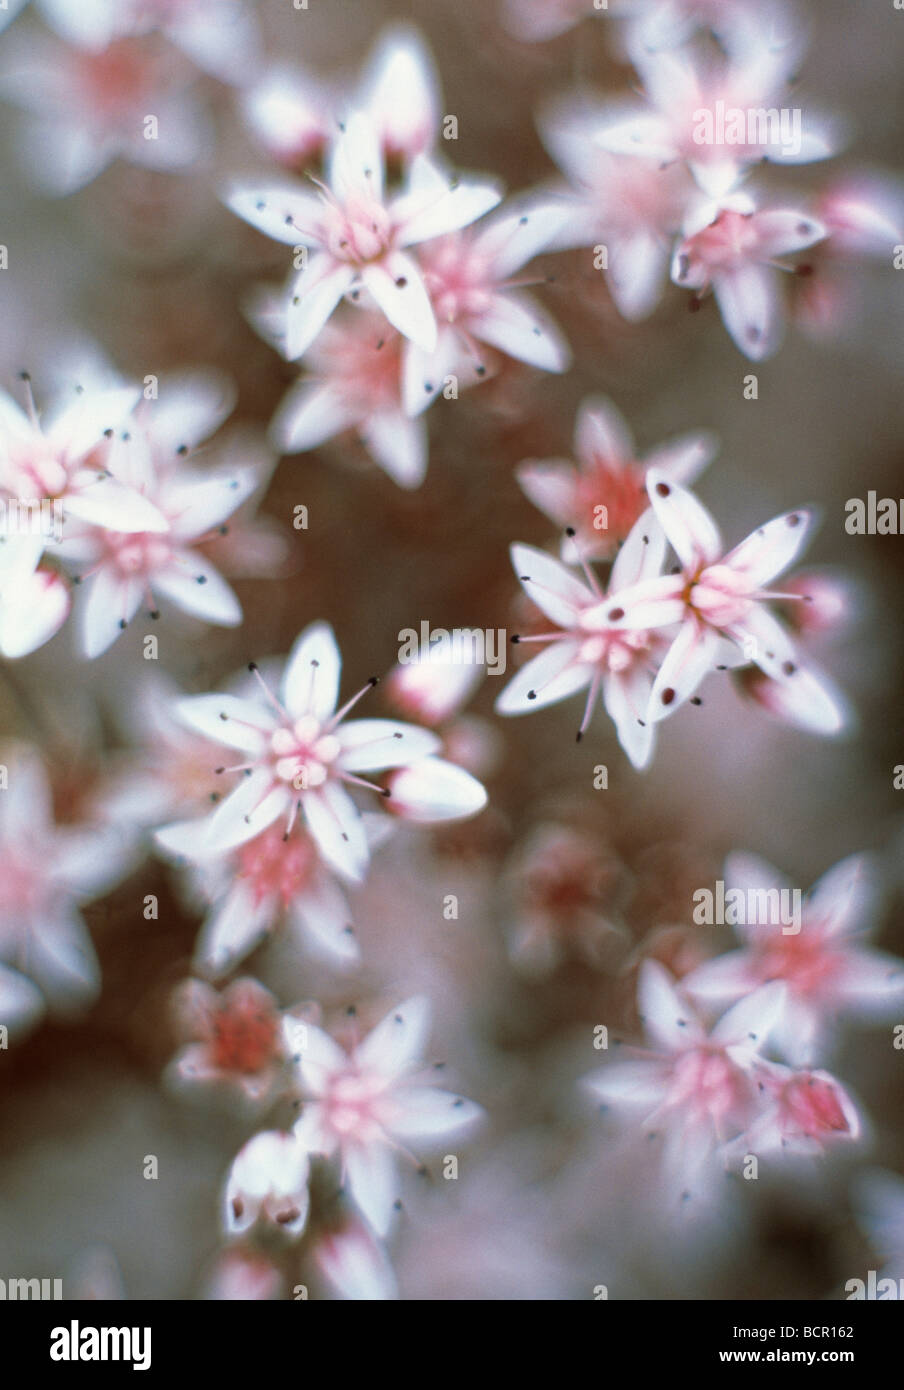 Sedum populifolium, Sedum, Ice plant Stock Photo